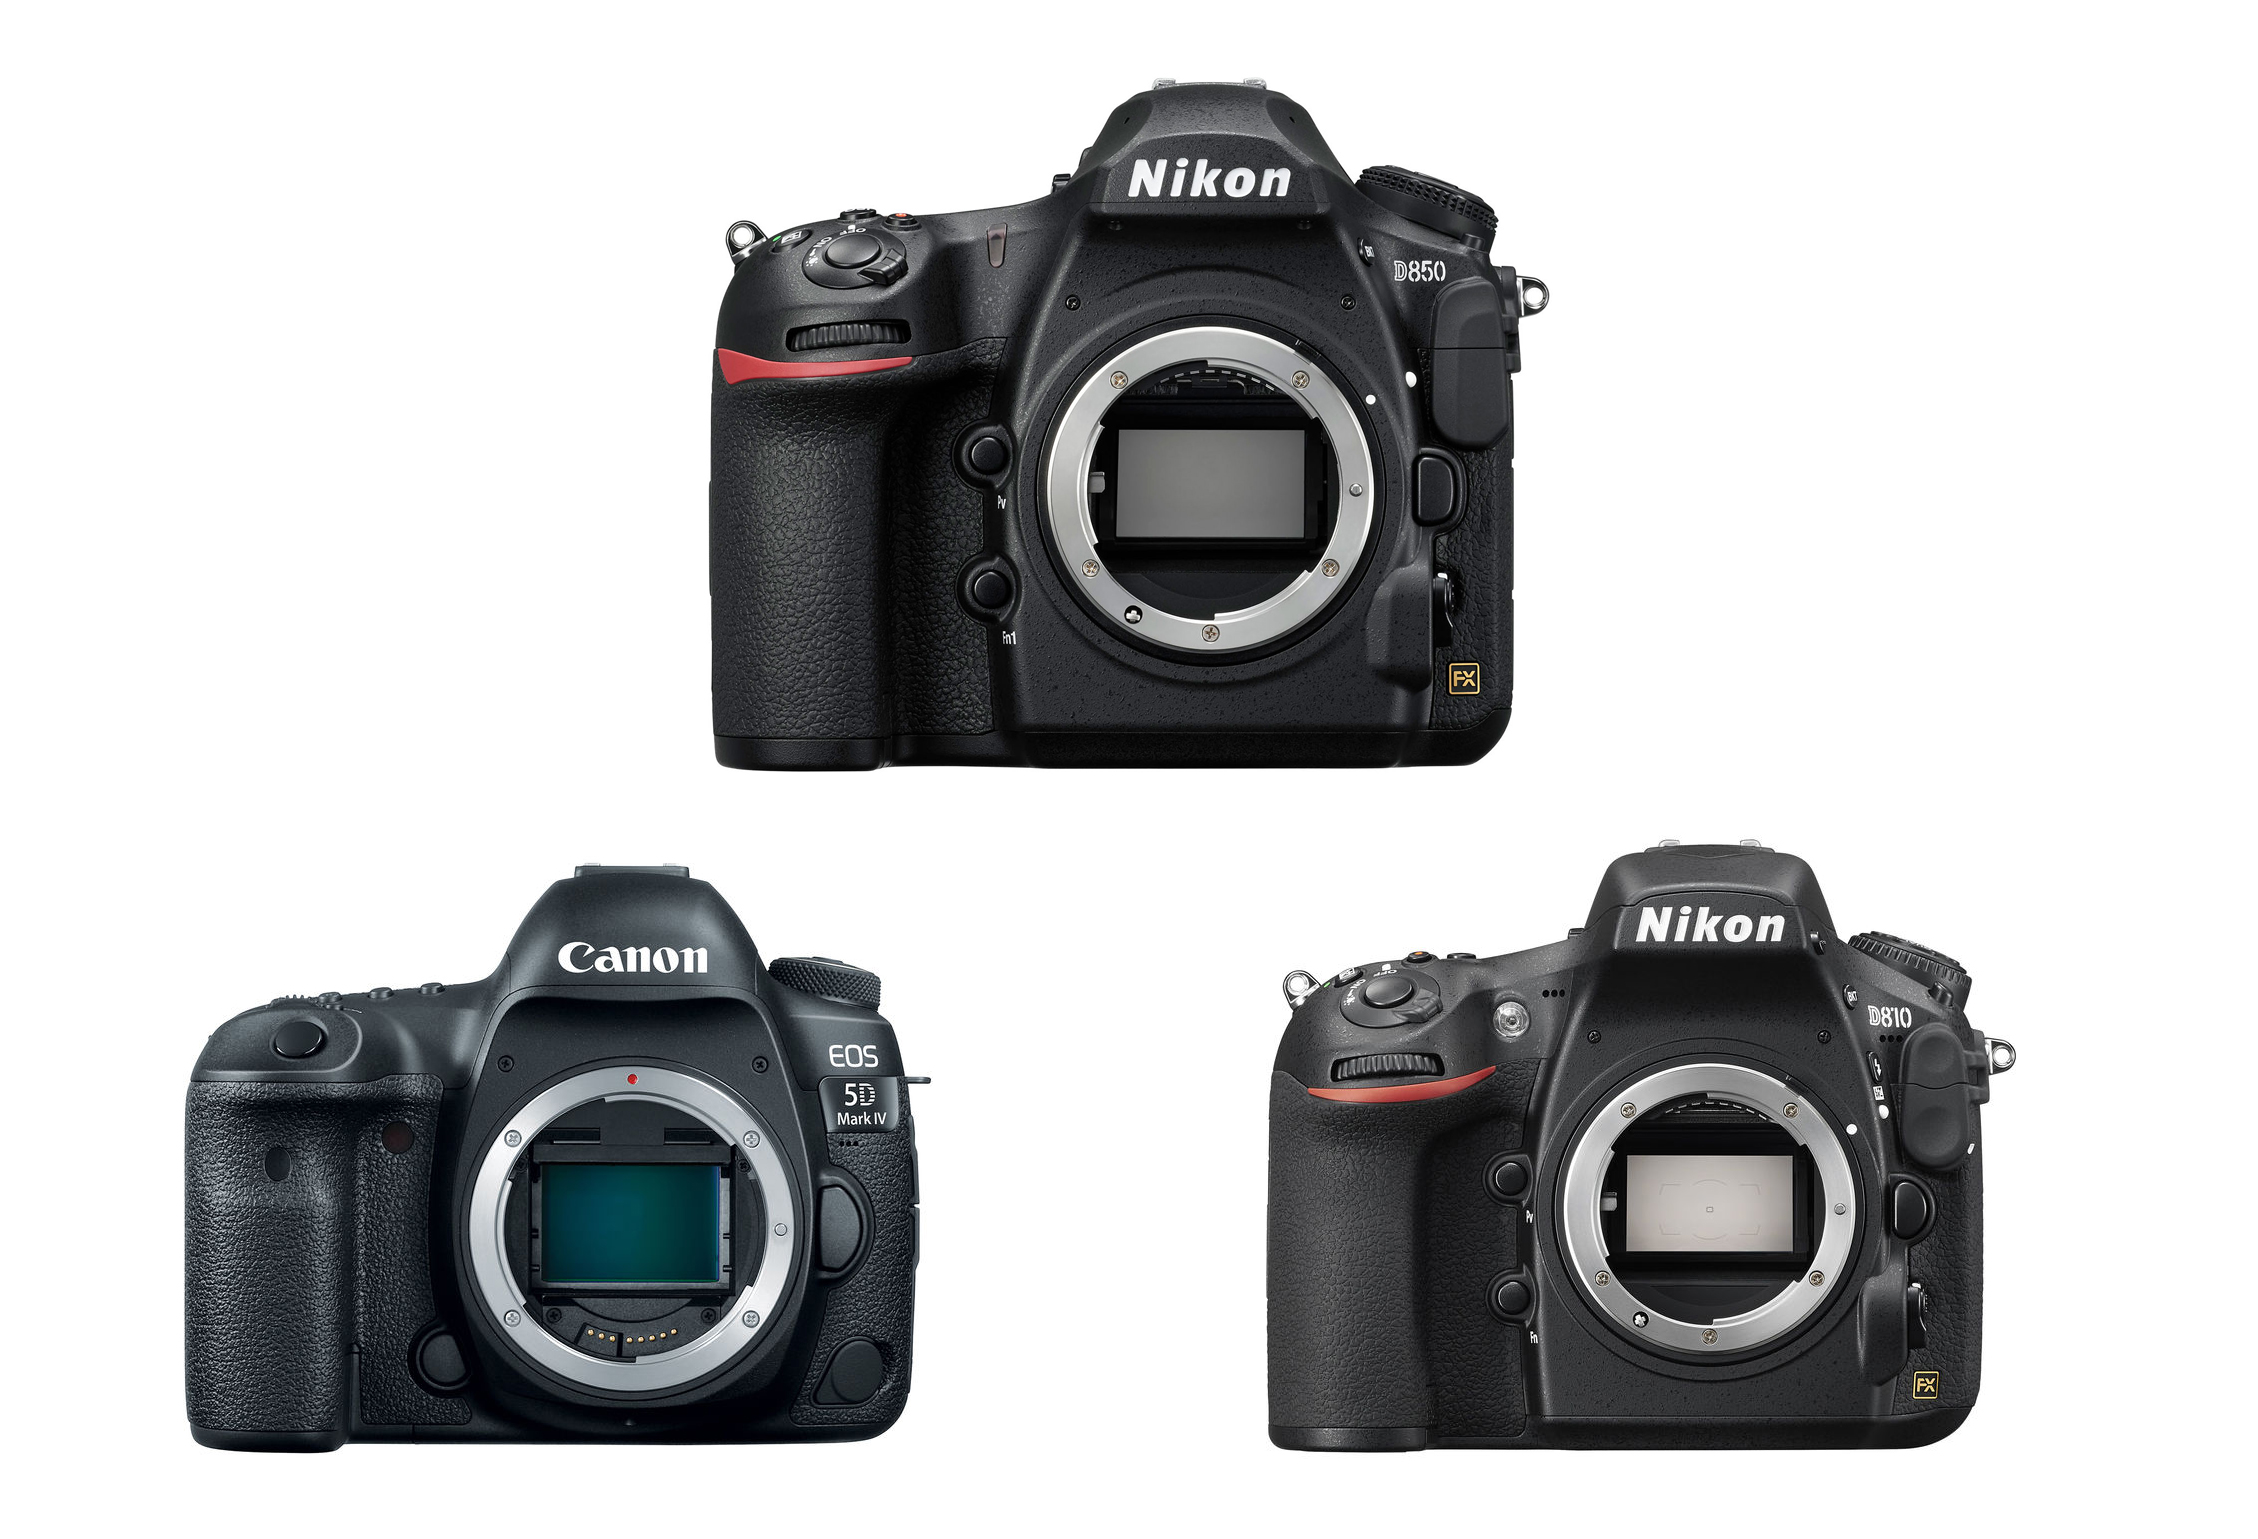 Nikon D850 Vs. Canon 5D Mark IV Vs. nikon d800 ...